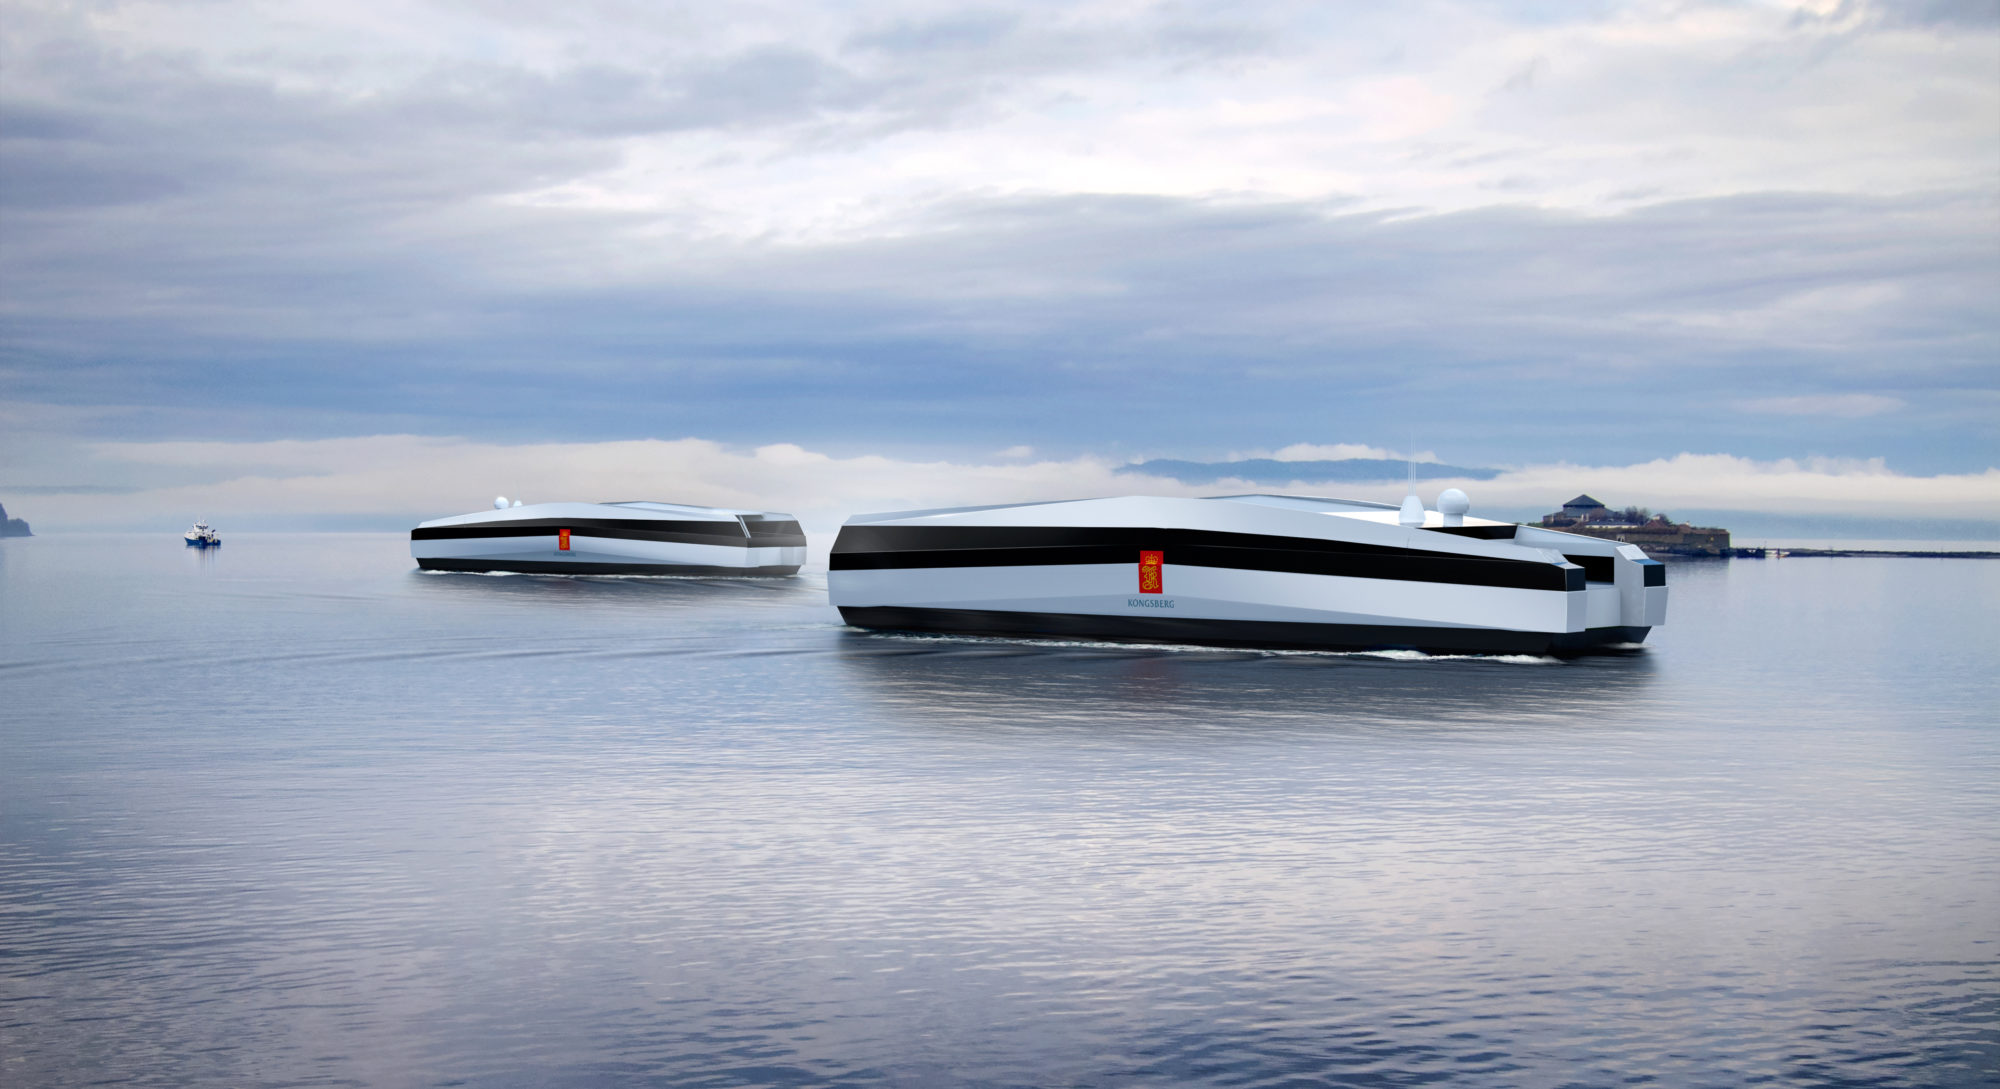 Illustrasjon som viser to lave, futurisk utseende skip, lagt inn på Trondheimsfjorden, der Munkholmen er synlig i bakgrunnen.